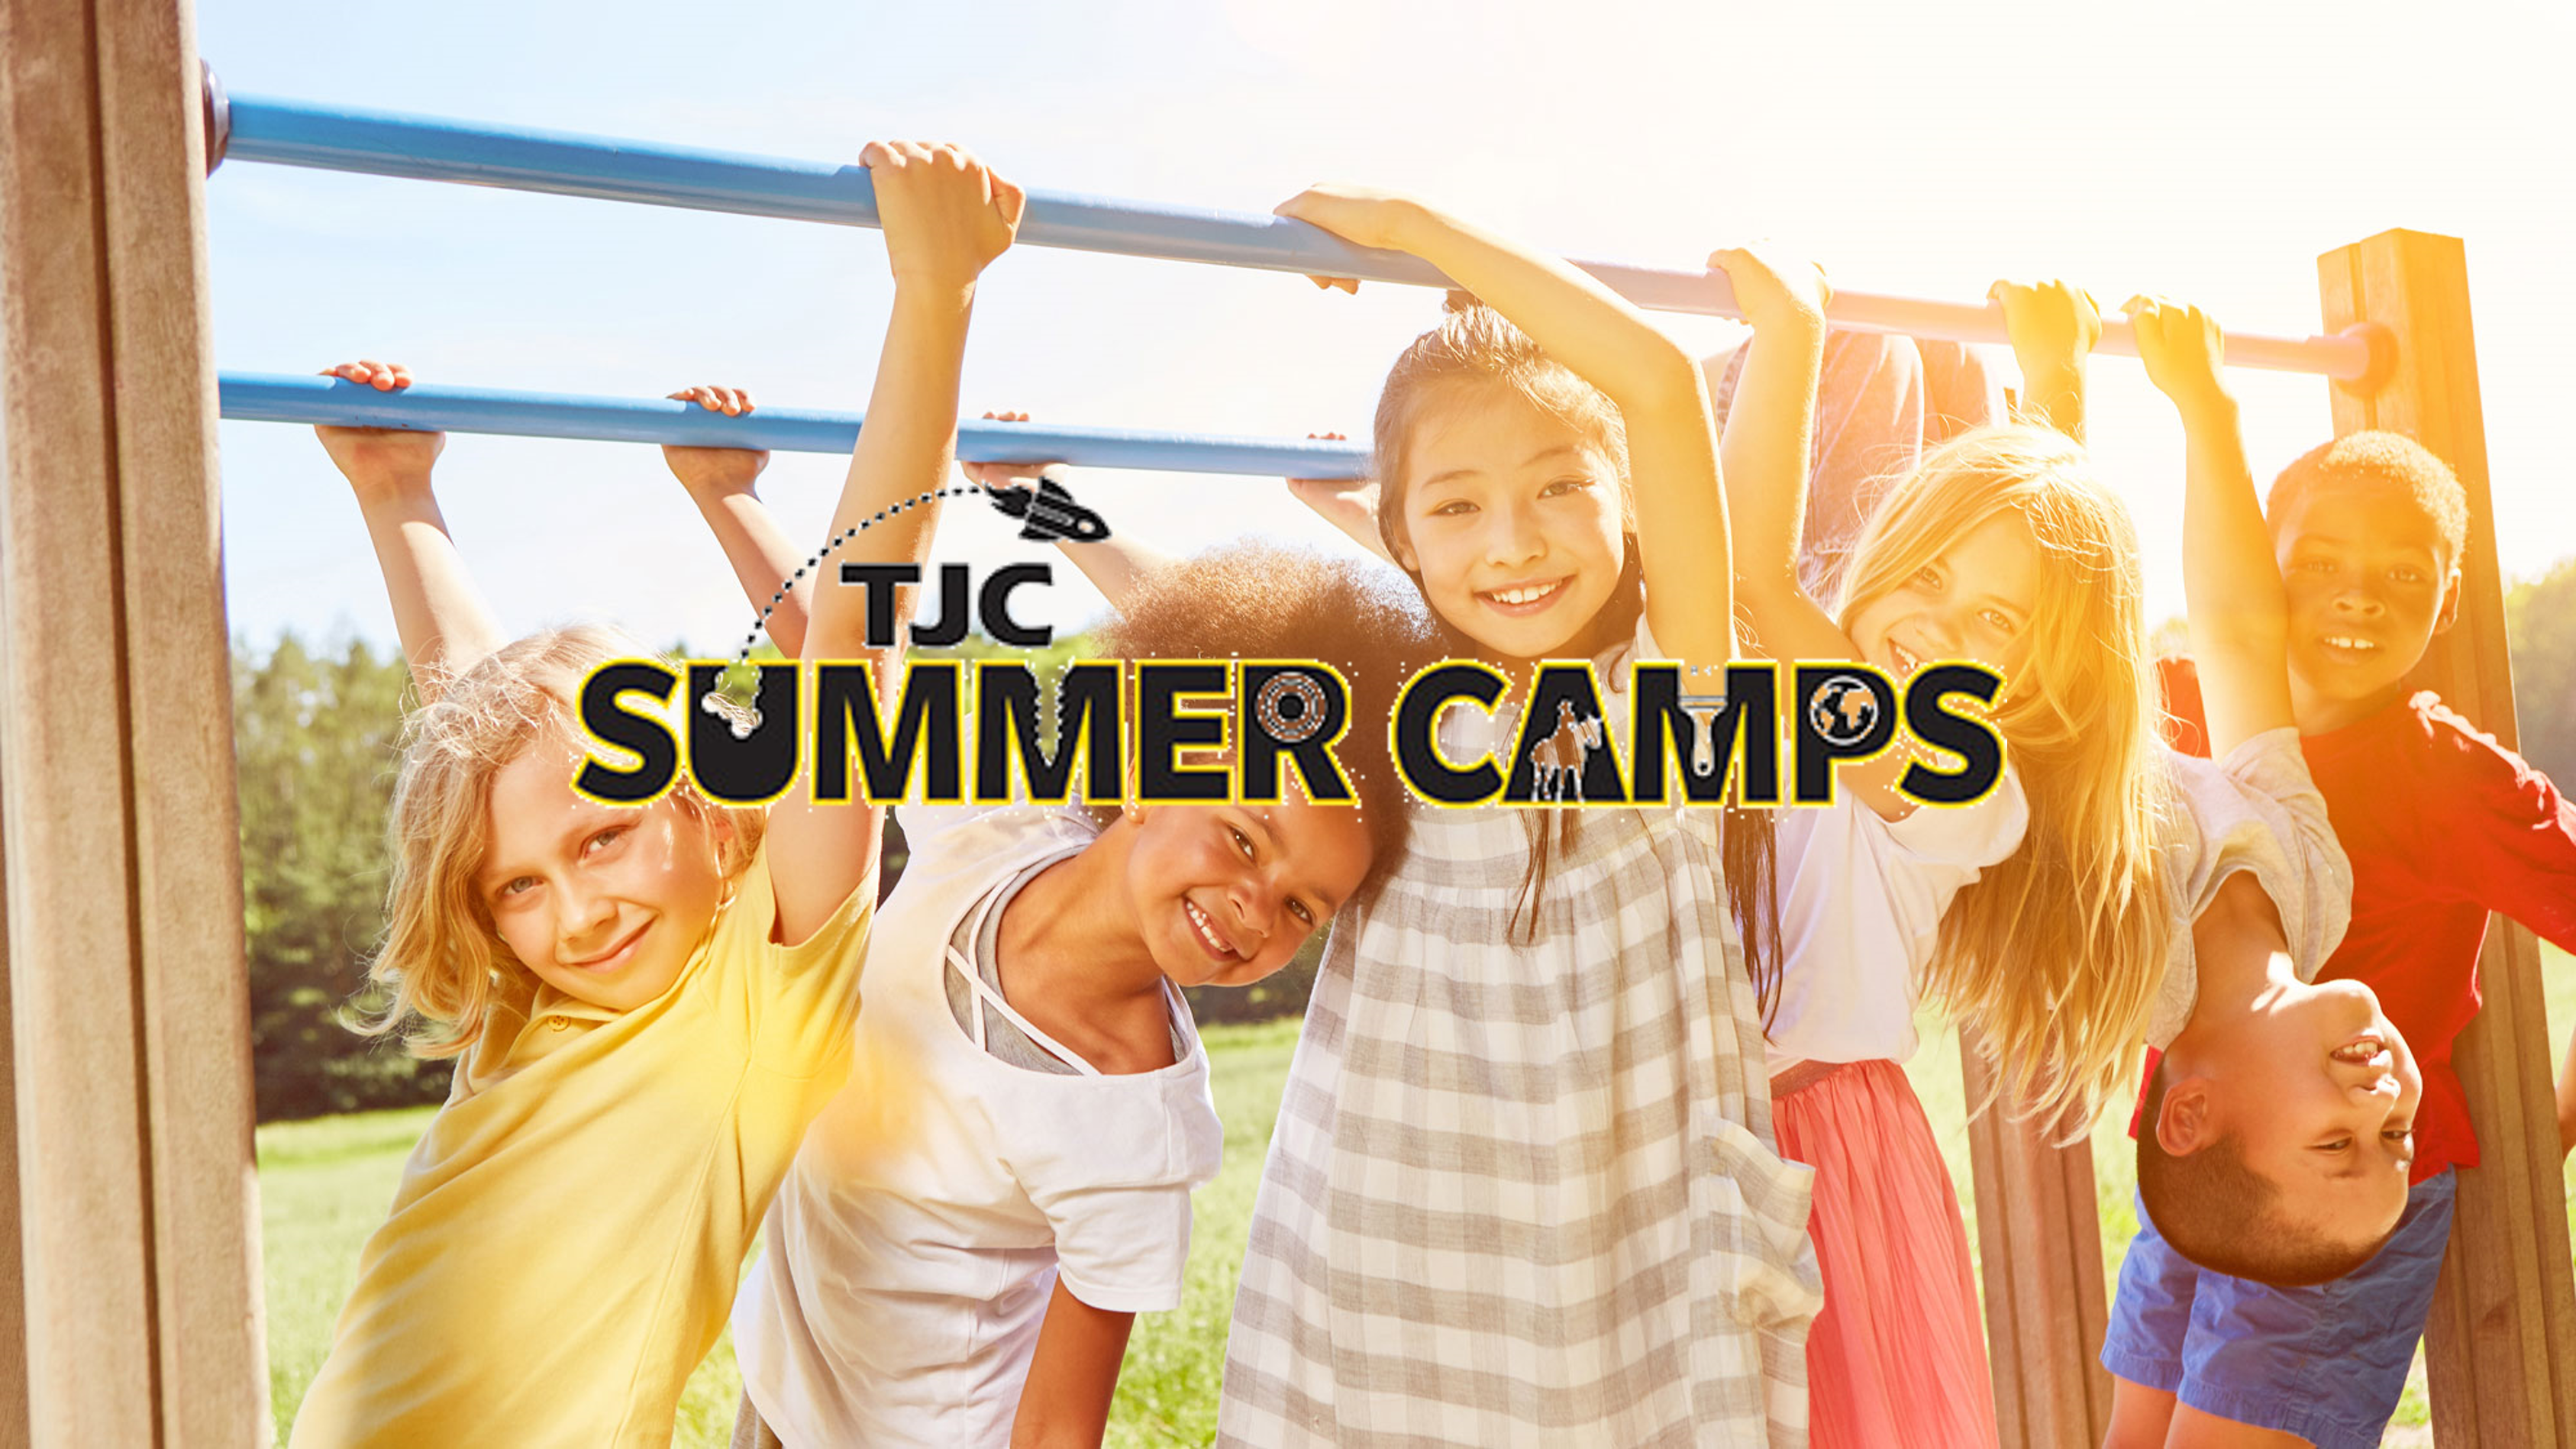 TJC Summer Camps